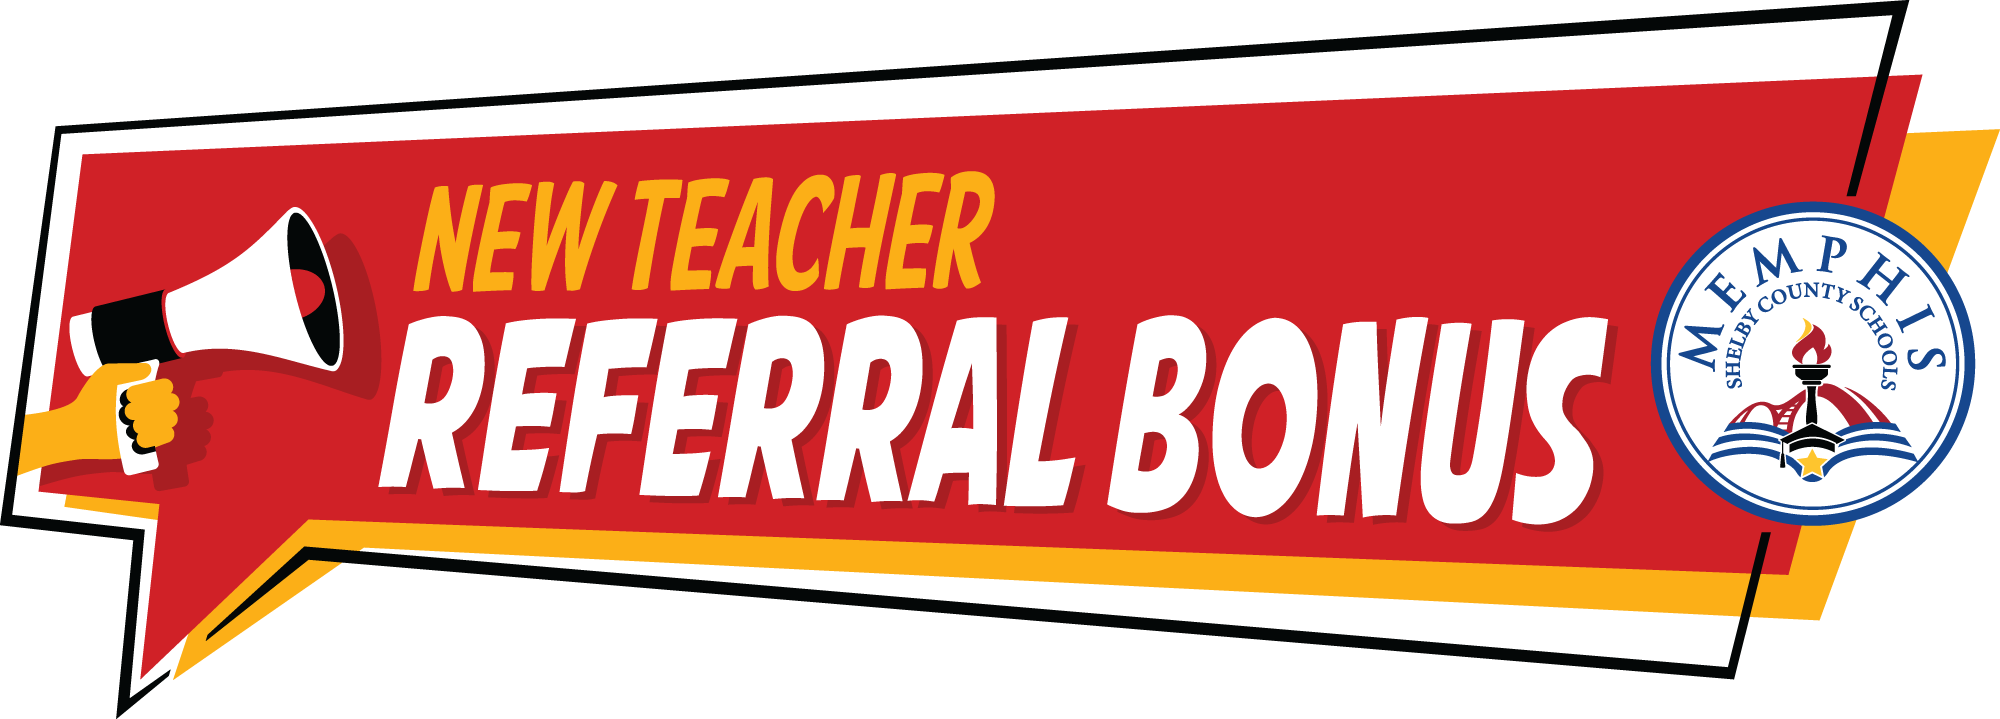 New Teacher Referral Bonus